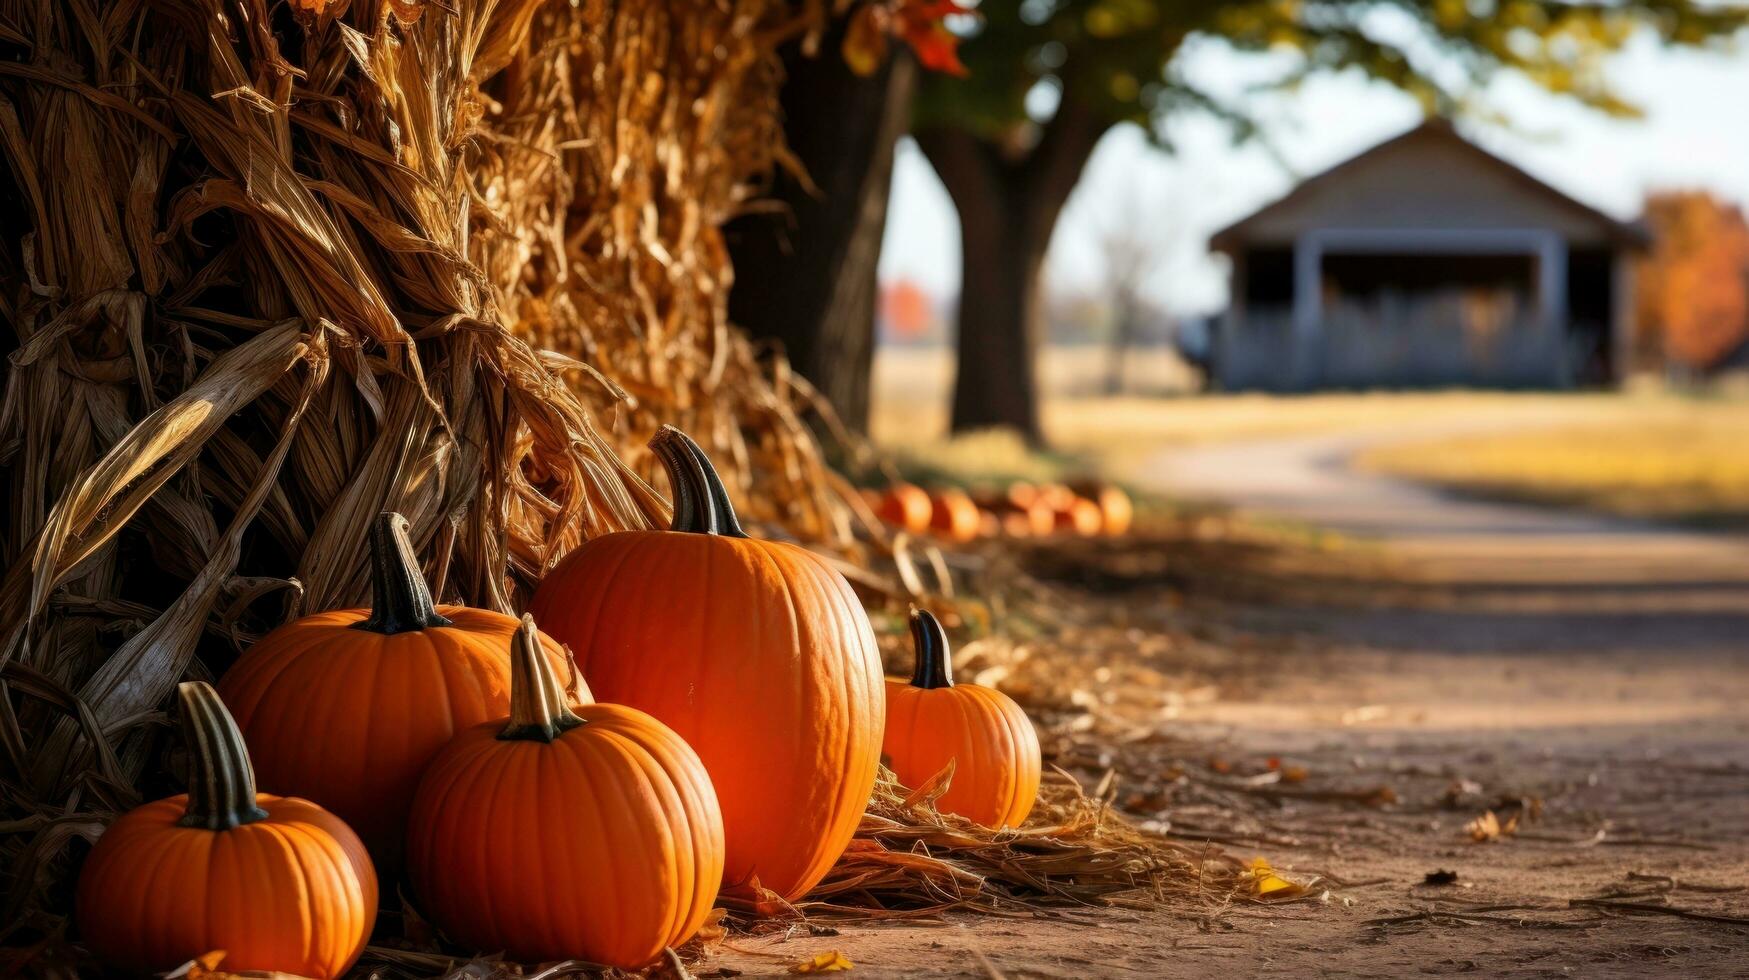 Pumpkins, leaves, hay bales, rustic farm scenery photo